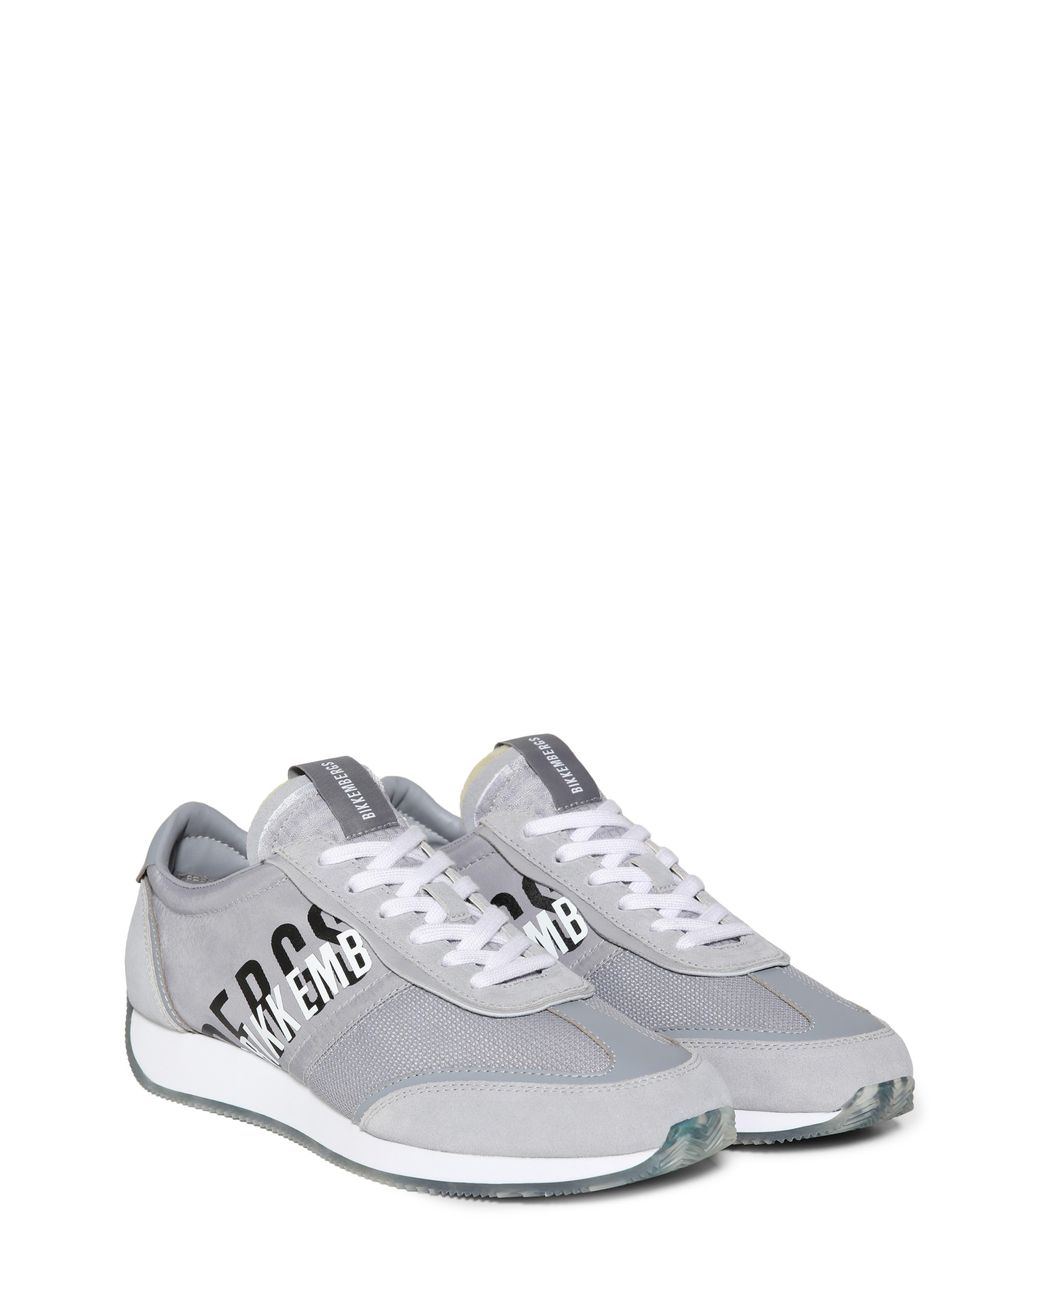 Bikkembergs Jonas Sneaker in Light Grey (Gray) for Men - Lyst